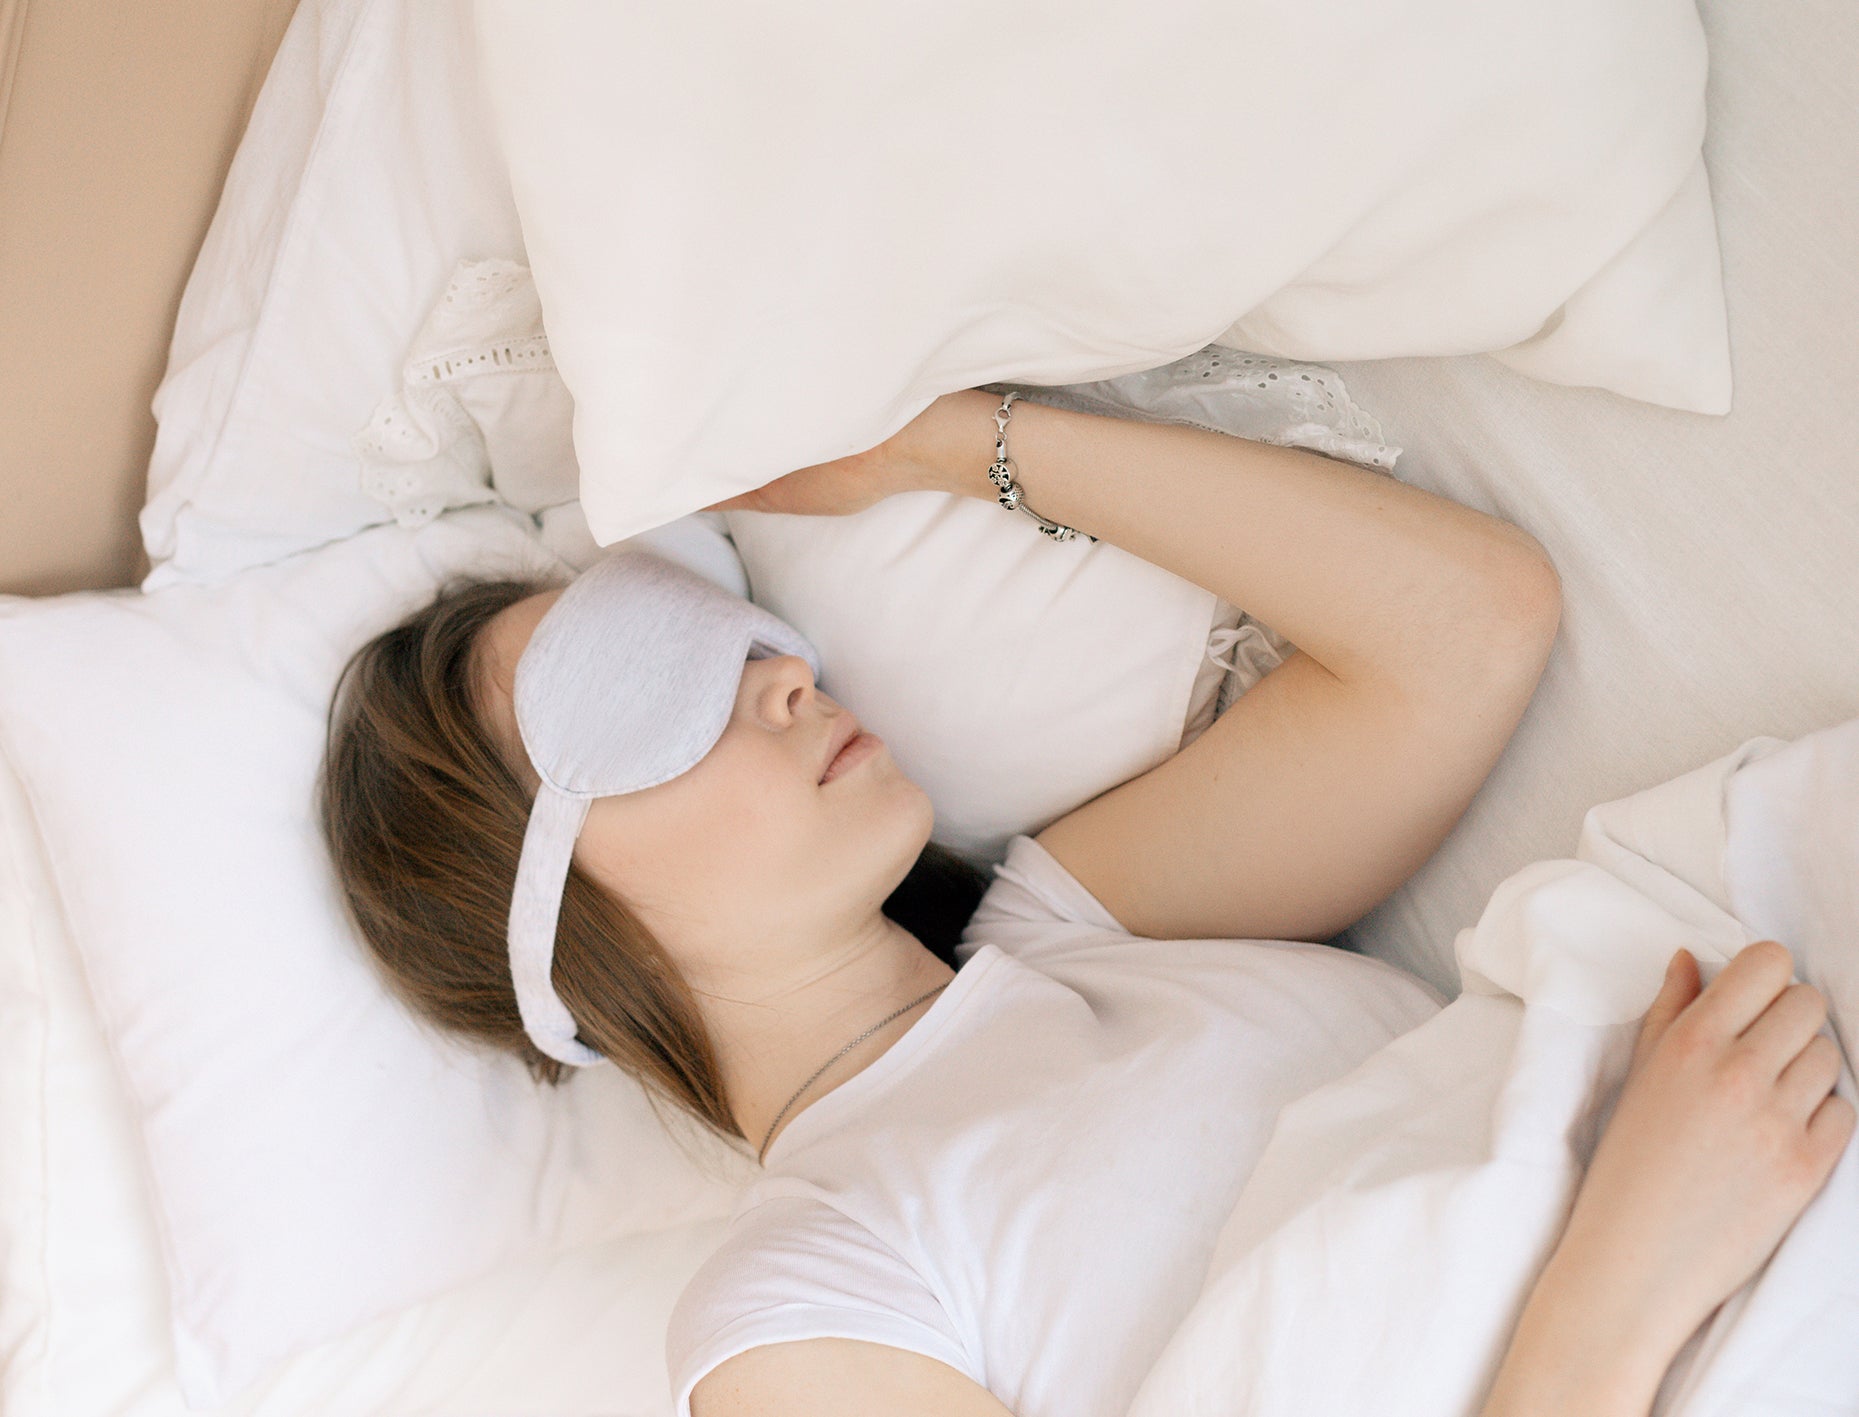 9 aides naturelles au sommeil qui peuvent vous aider à vous endormir